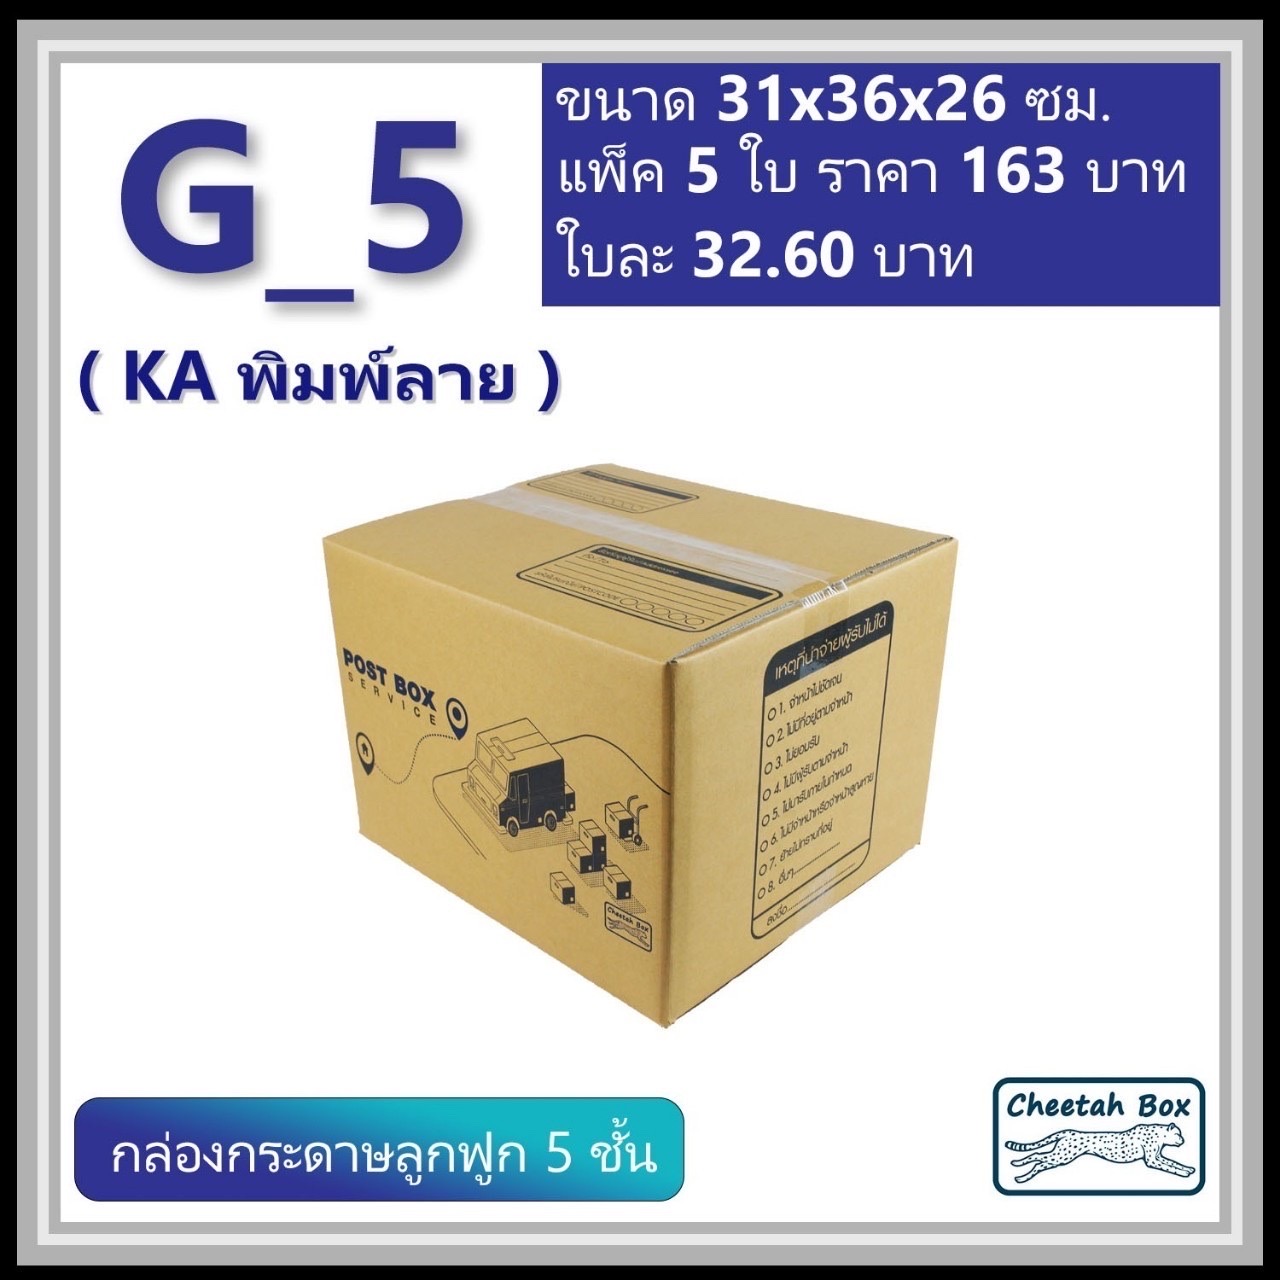 กล่องลูกฟูก 5 ชั้น G-5 (KA230) พิมพ์ลาย ลูกฟูก 5 ชั้น (Cheetah Box ขนาด 31*36*26 CM)